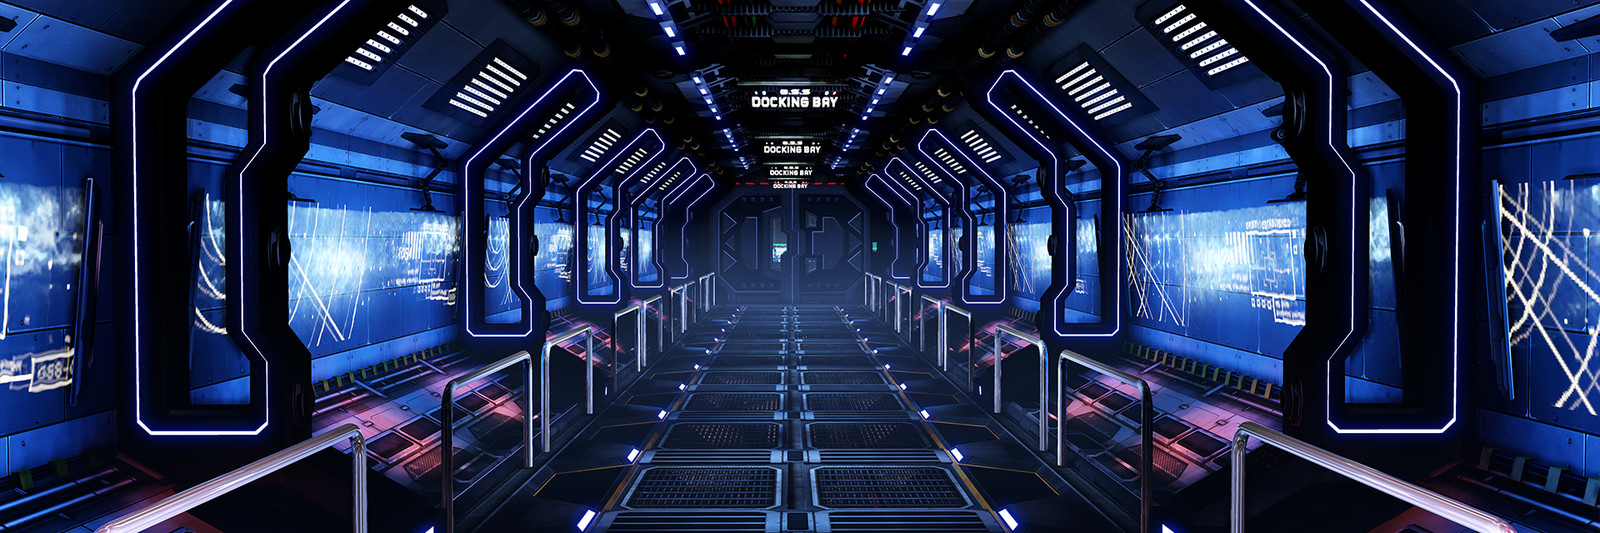 Genesis Space Station Corridor